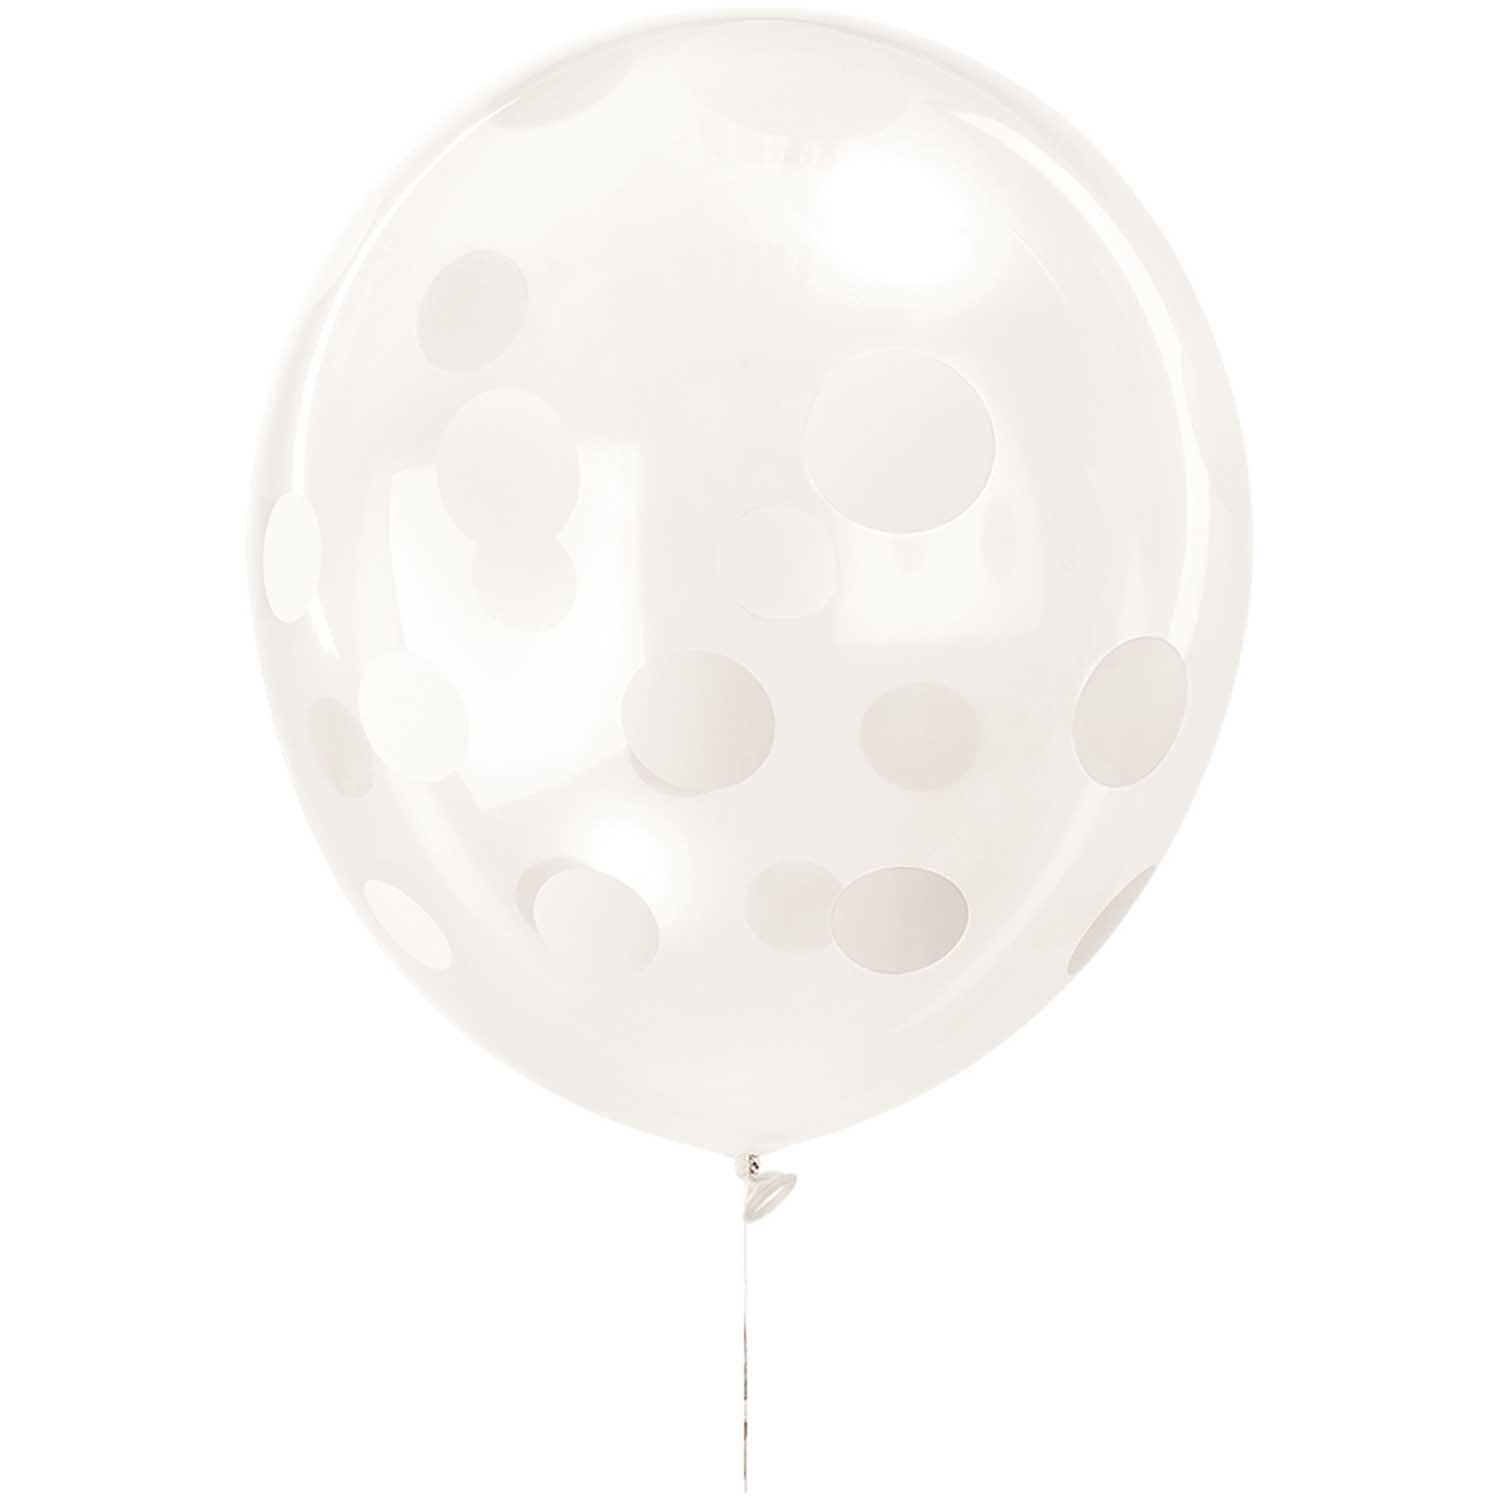 Luftballon Punkte/unifarben transparent-weiß 30cm 12 Stück